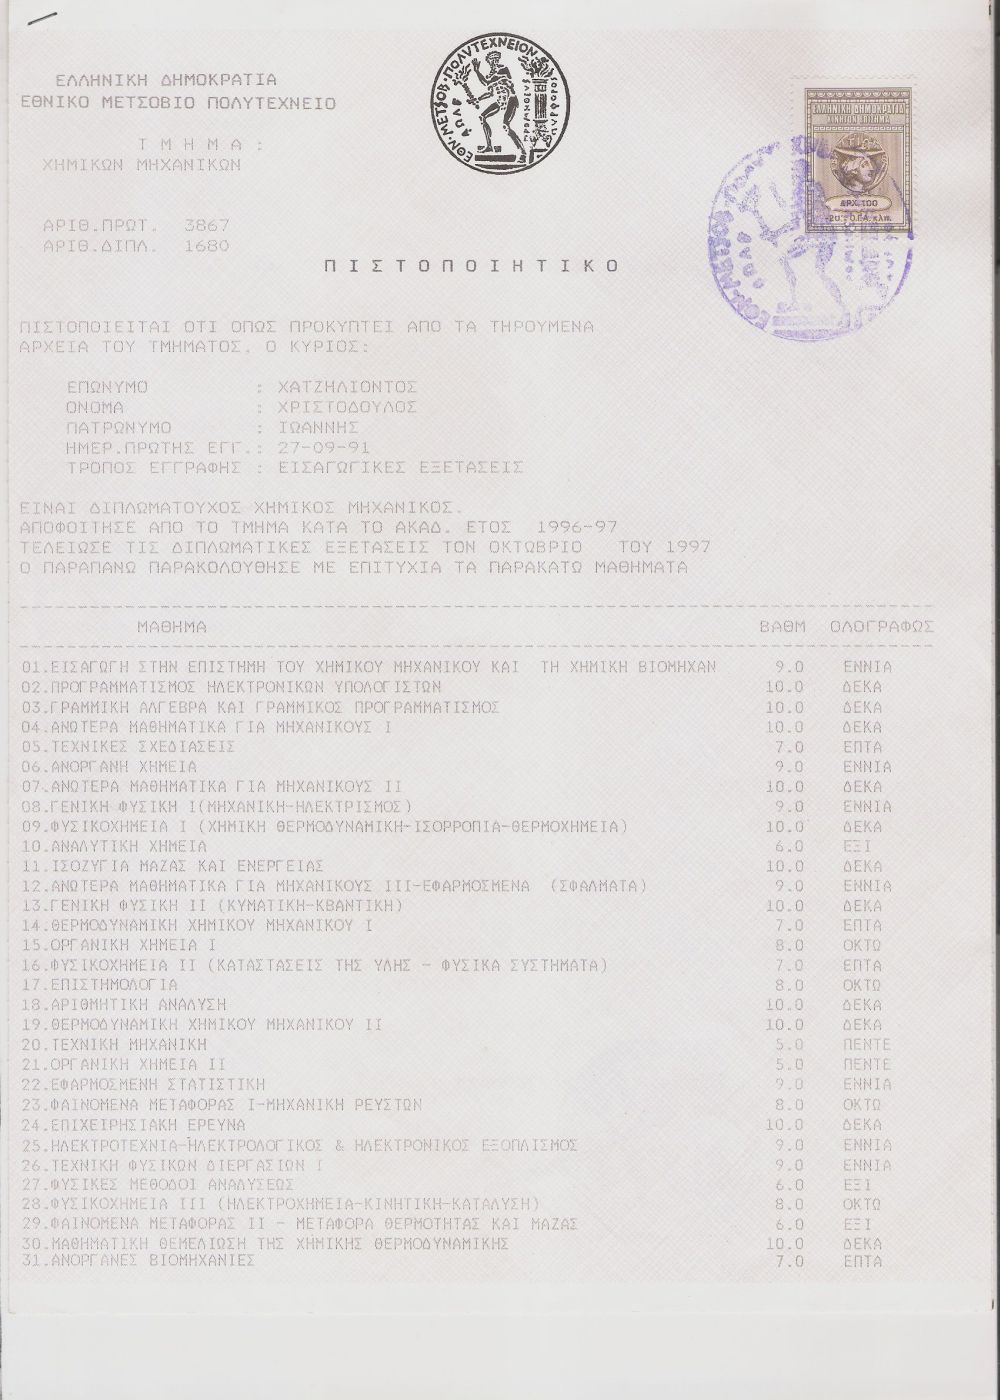 1997 - Βαθμολογία μαθημάτων χημικής μηχανικής από το ΕΜΠ Αθηνών